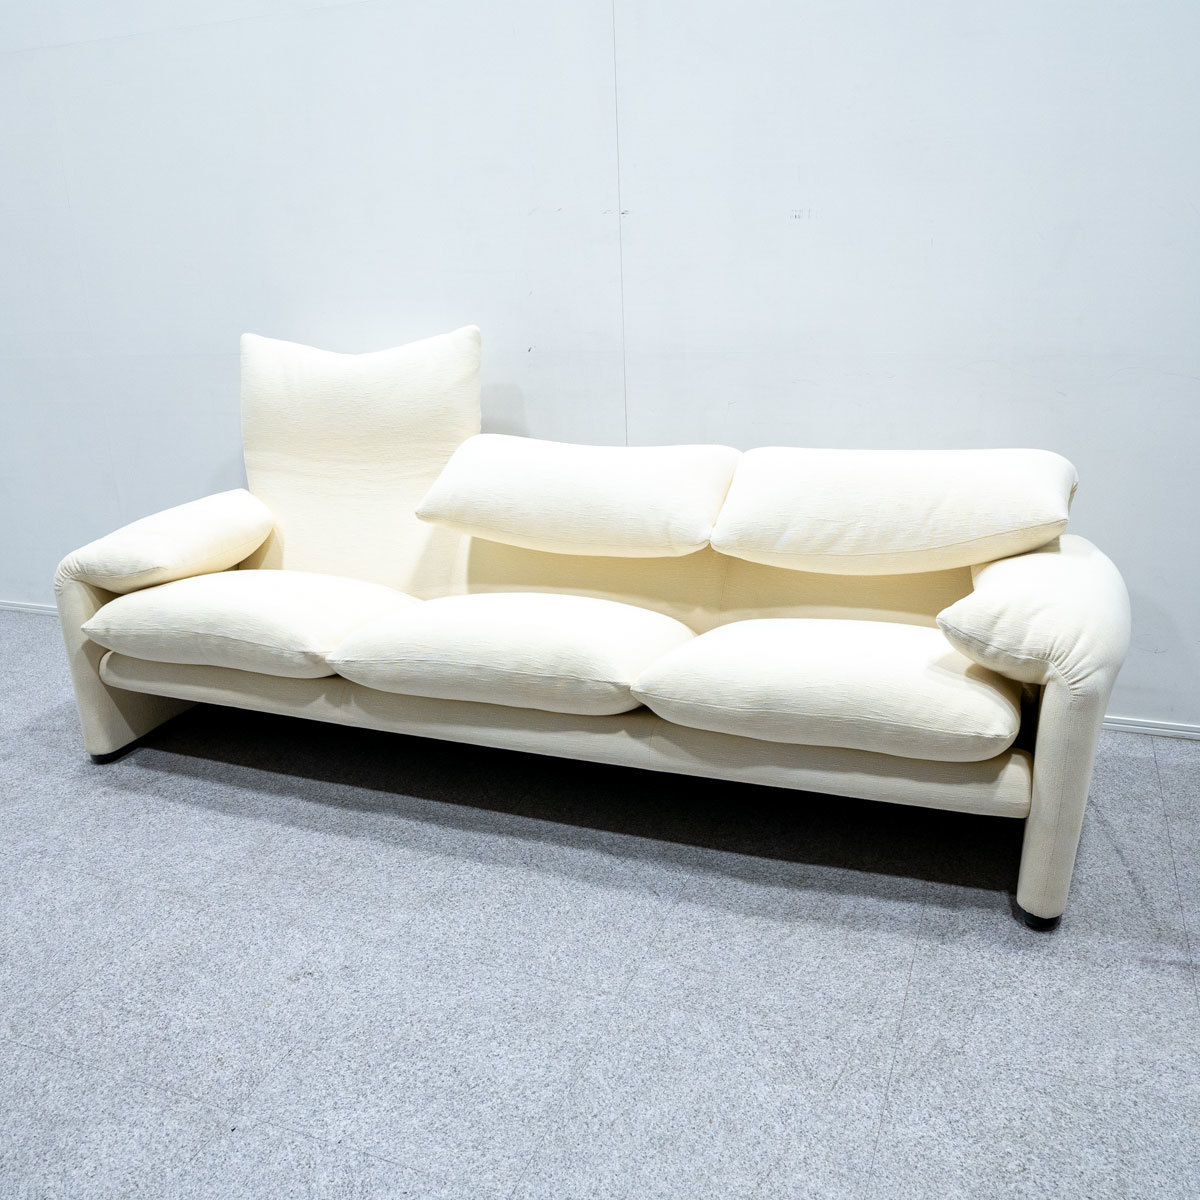 [ secondhand goods ]Cassinakasi-naMARALUNGA 3Pmalarunga3 seater . sofa fabric ivory vi ko*maji -stroke reti regular price 107 ten thousand 